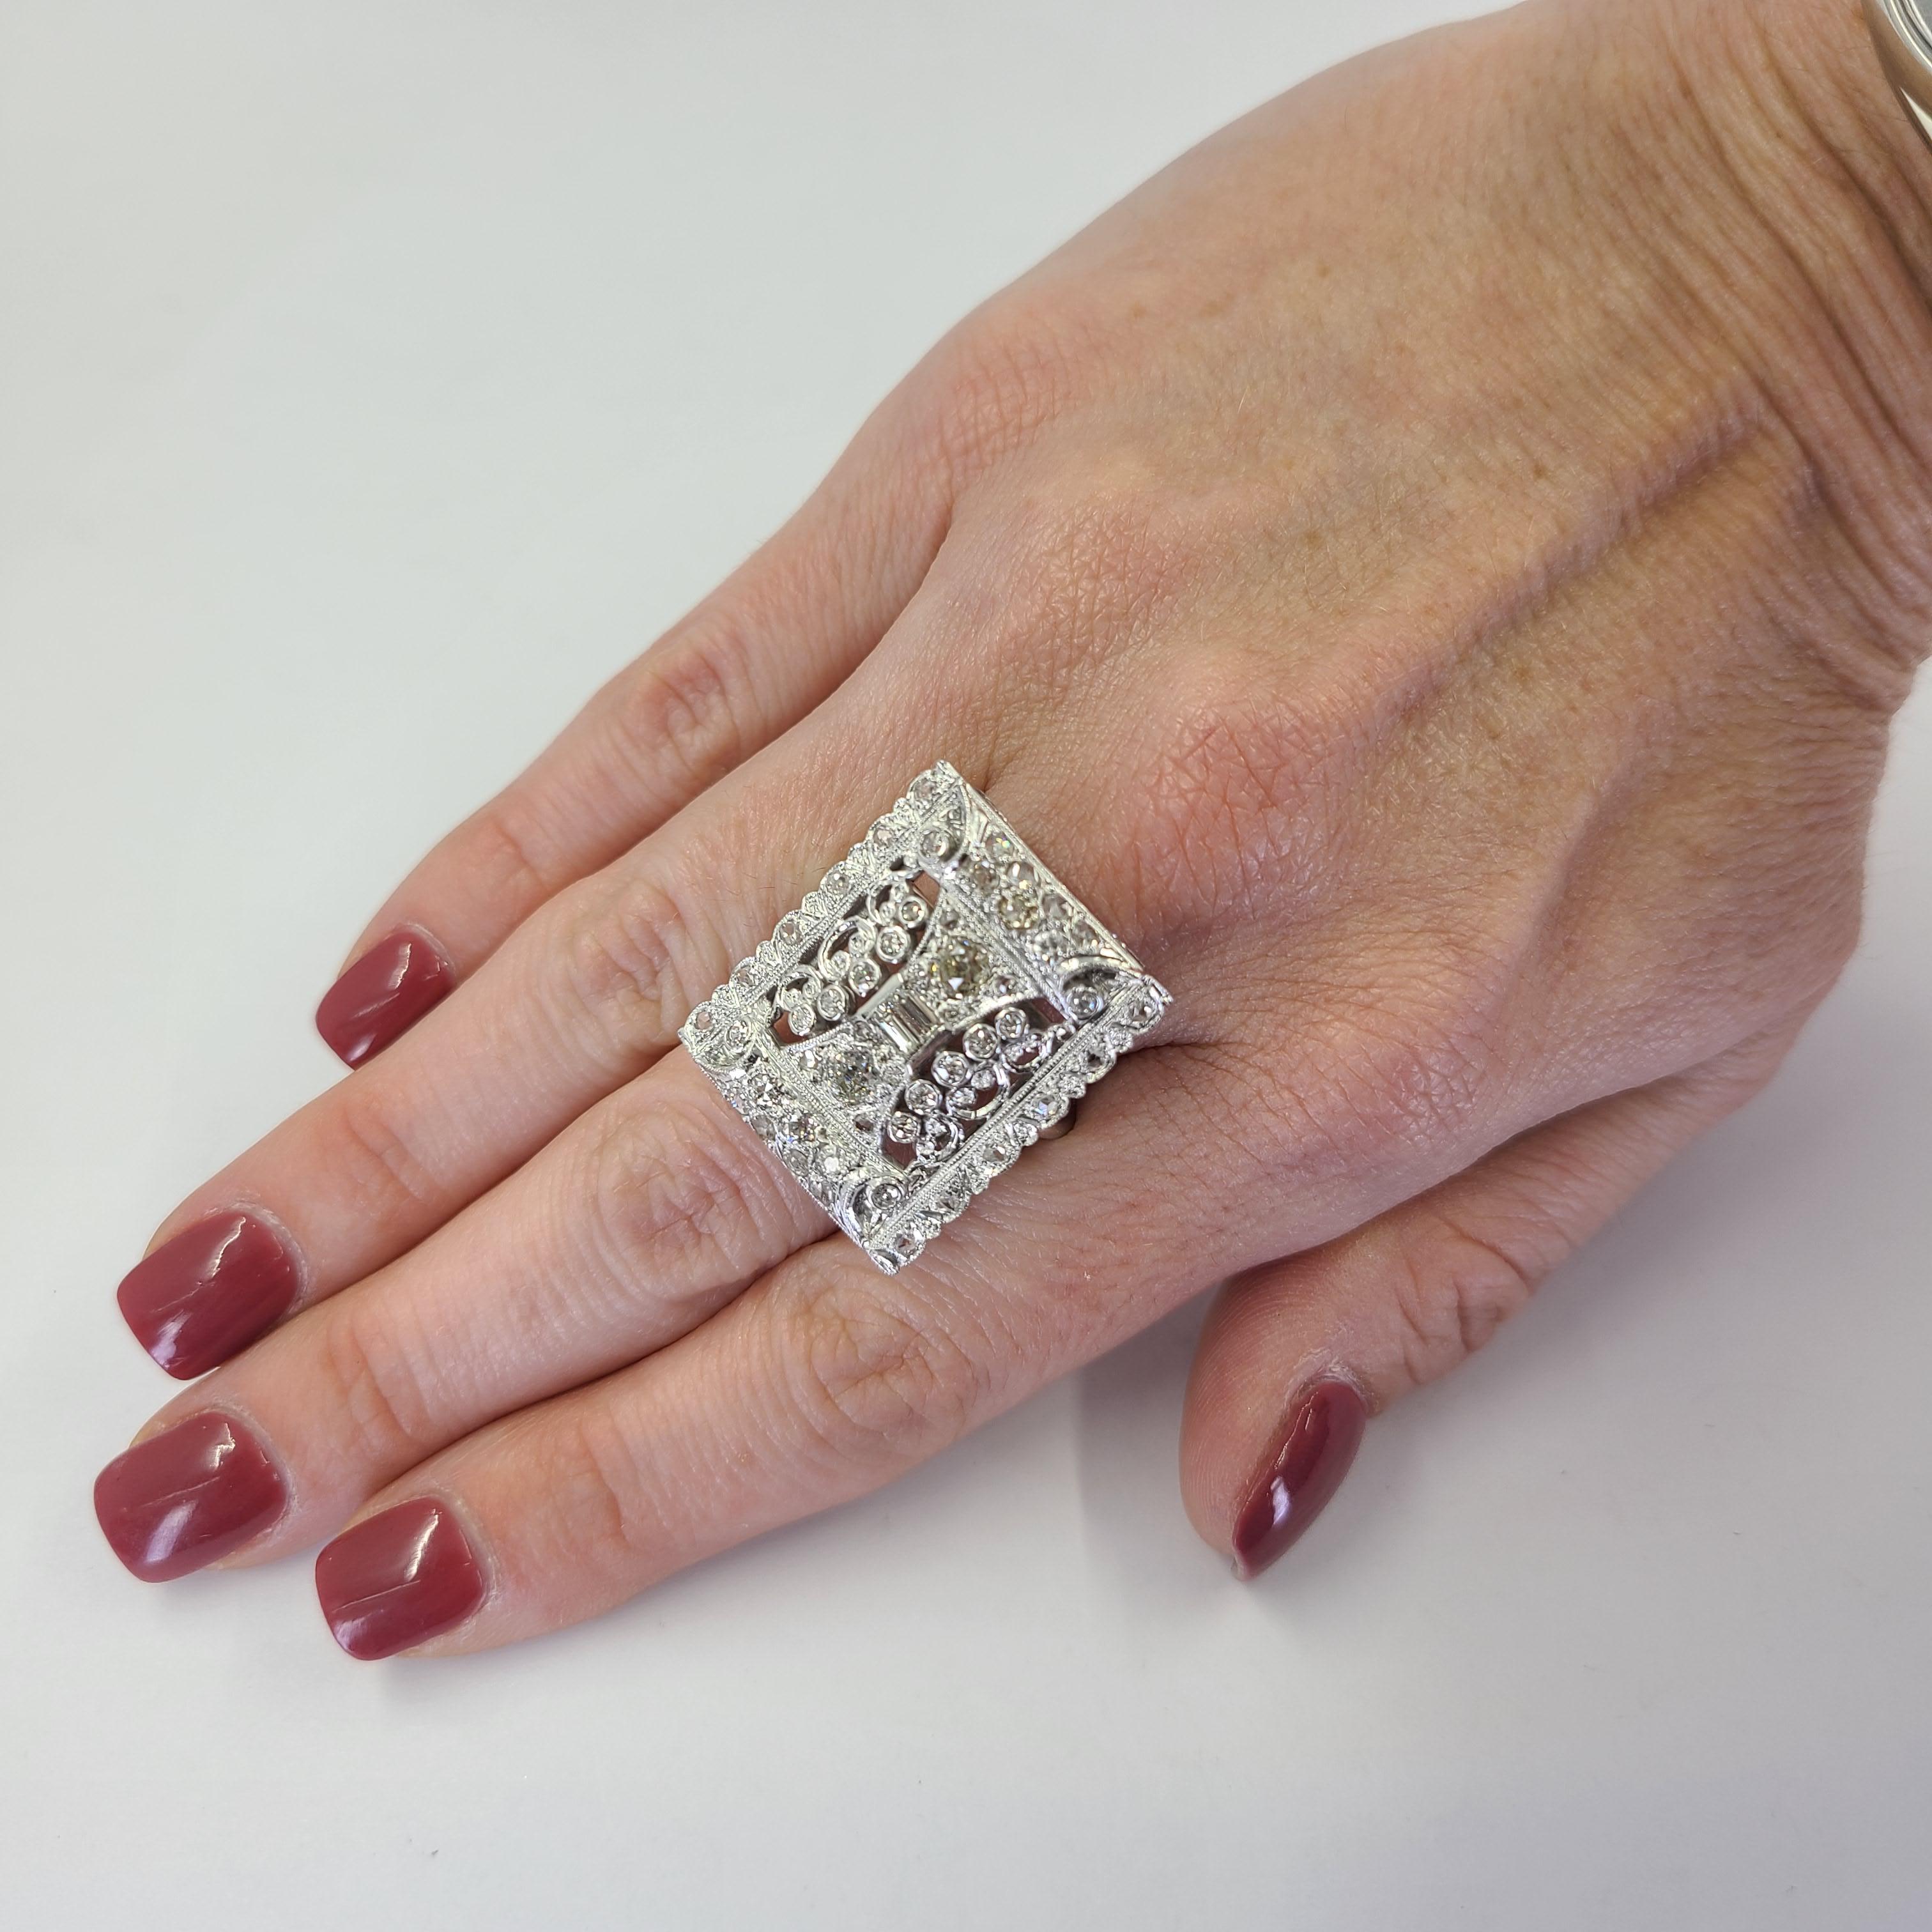 14 Karat Weißgold Antike Pin zu Ring Umwandlung mit 44 Old Mine Cut Diamanten von VS & SI Clarity & H-M Farbe insgesamt ca. 1,50 Karat. Das fertige Gewicht beträgt 15 Gramm.  Fingergröße 7,5.